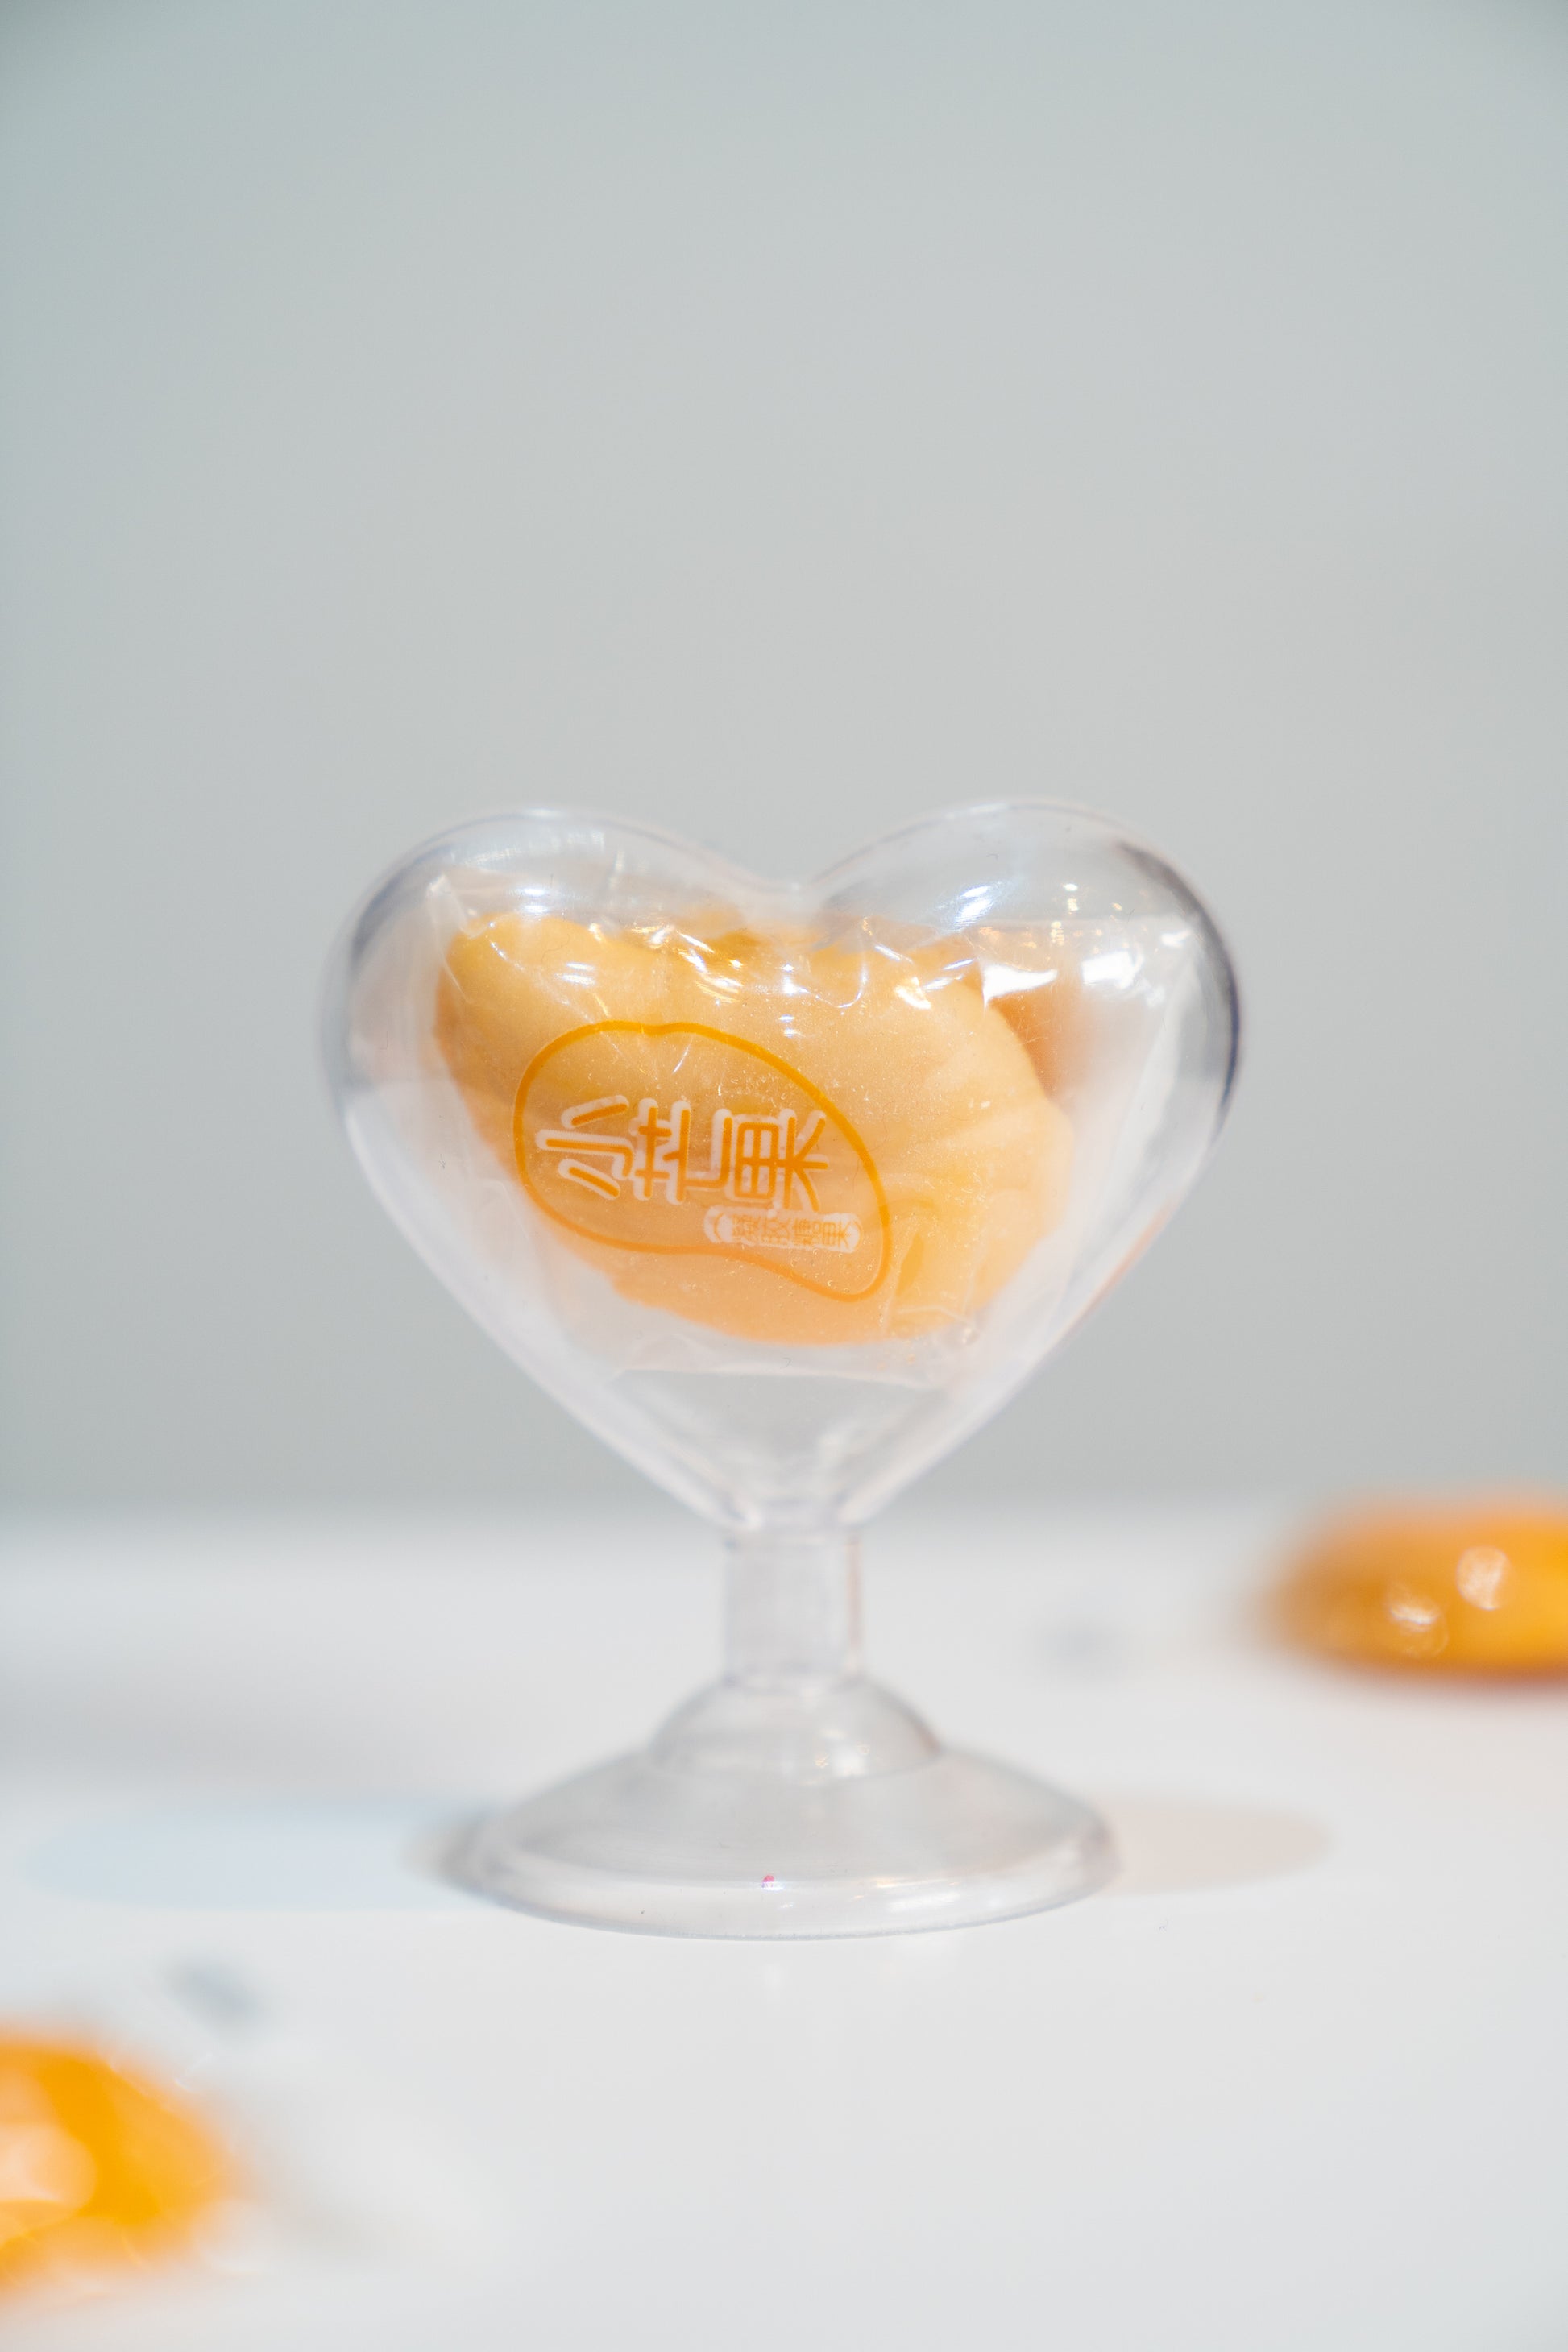 Bonbon aphrodisiaque mango candy - Safinel